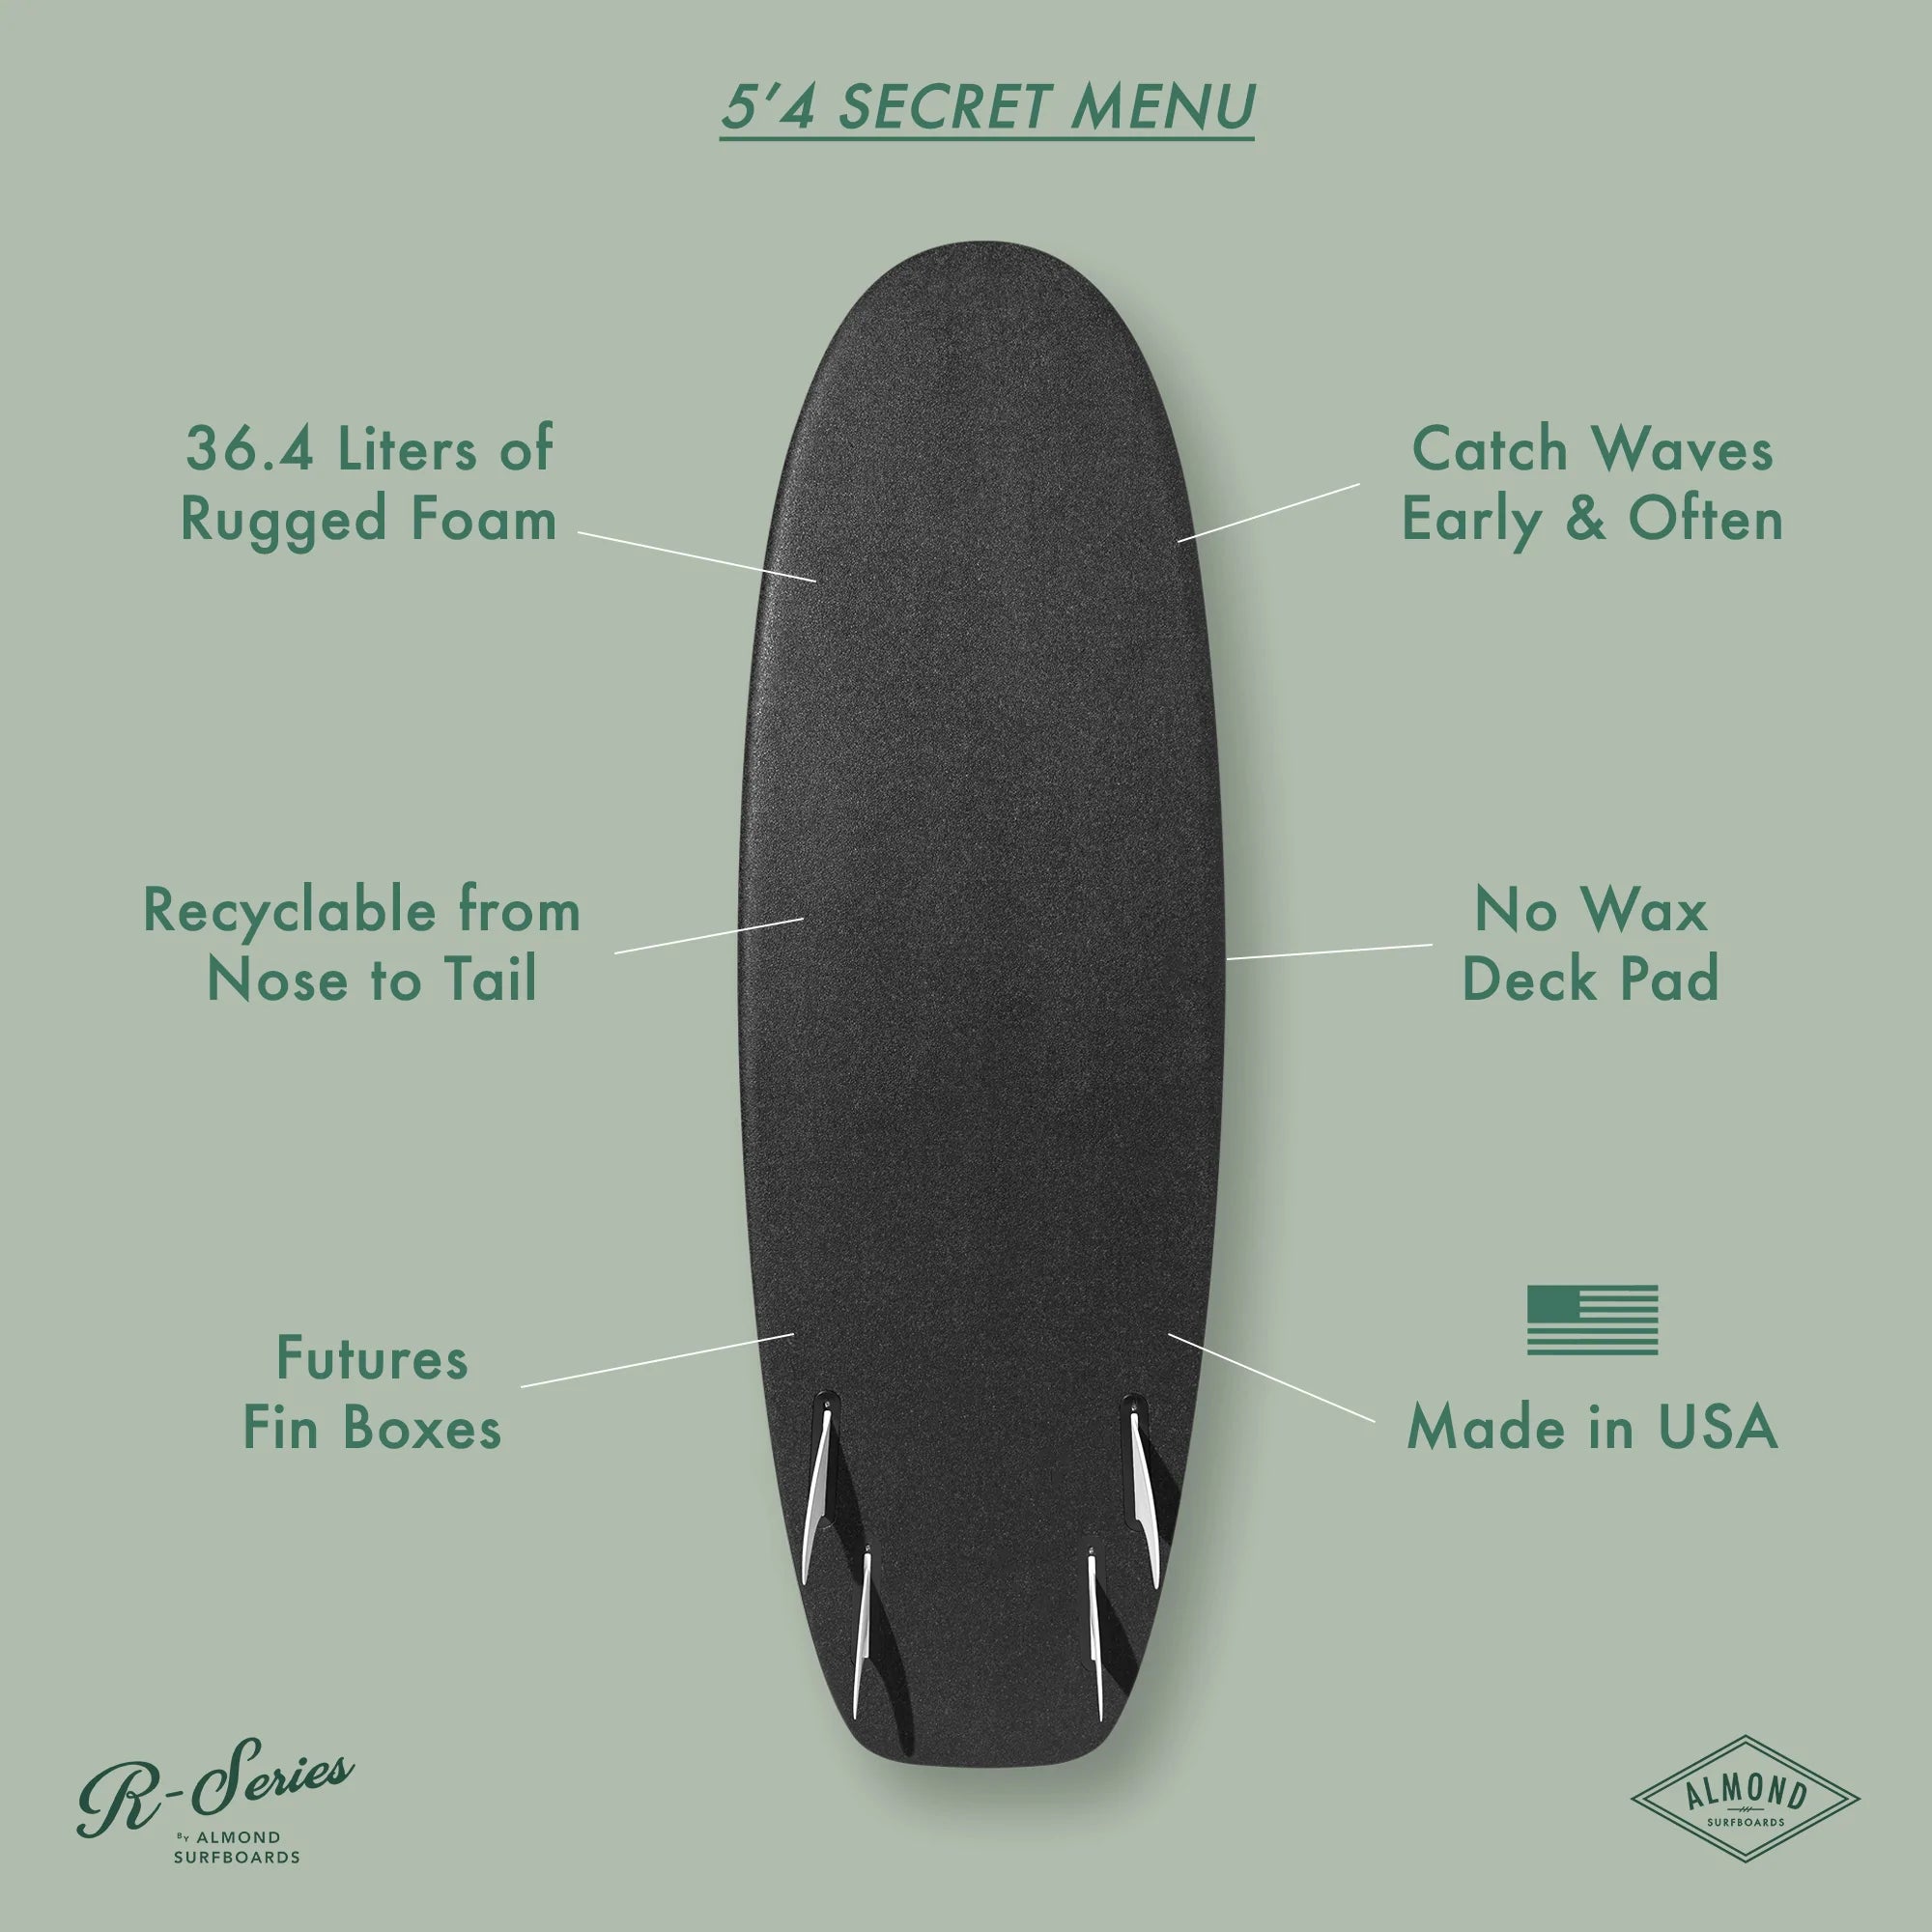 ALMOND Surfboards - R-Series Secret Menu 5'4 - Peel